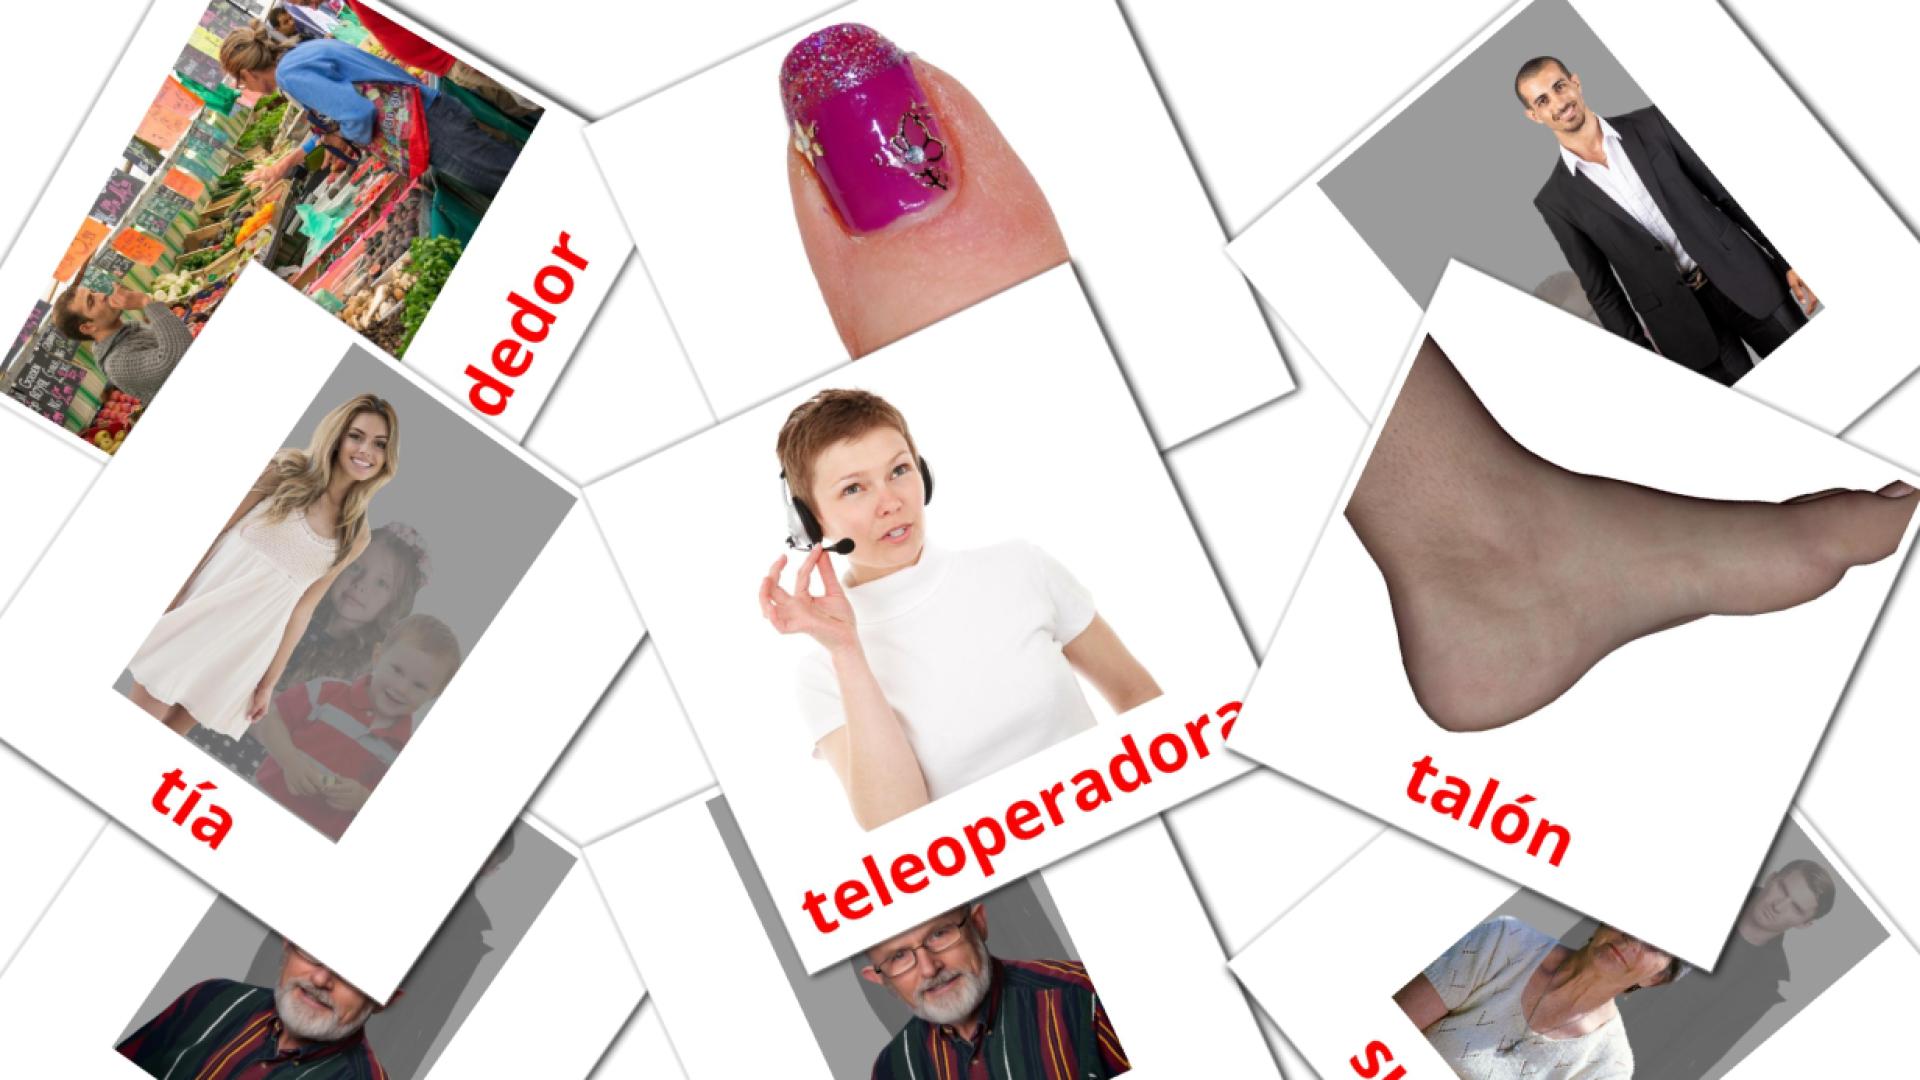 kurdo(kurmanj) tarjetas de vocabulario en Personas